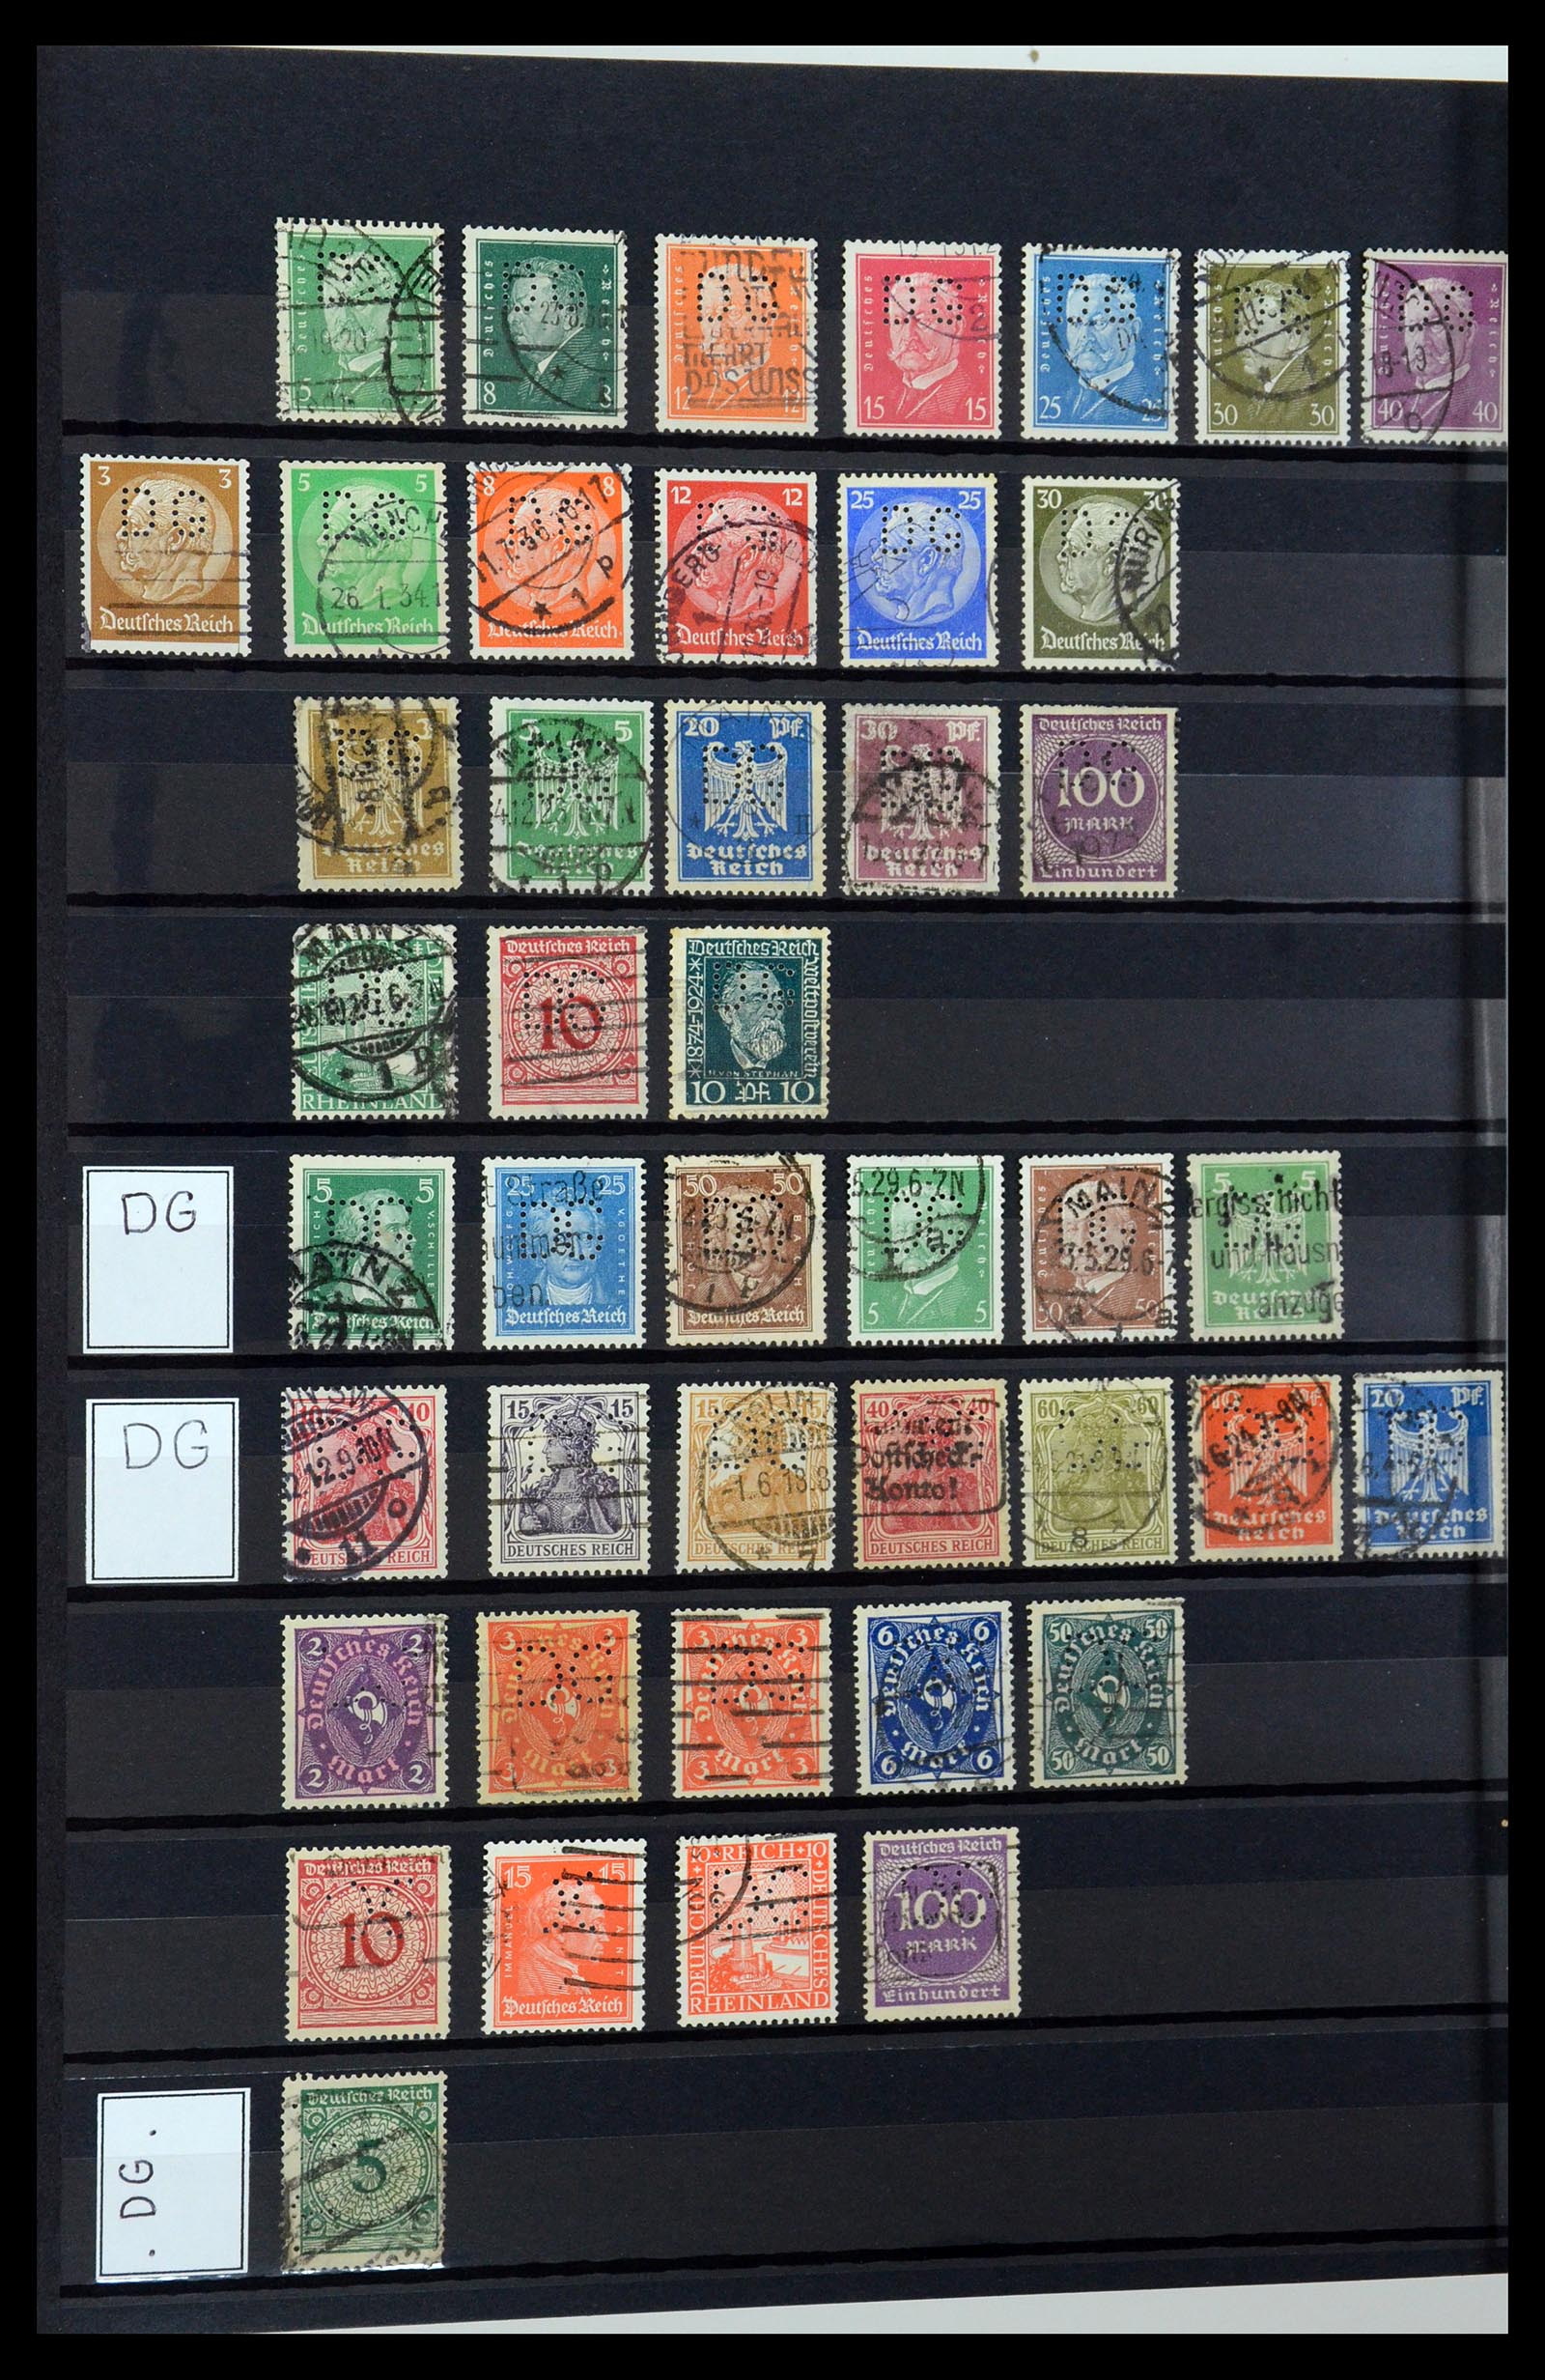 36405 096 - Stamp collection 36405 German Reich perfins 1880-1945.